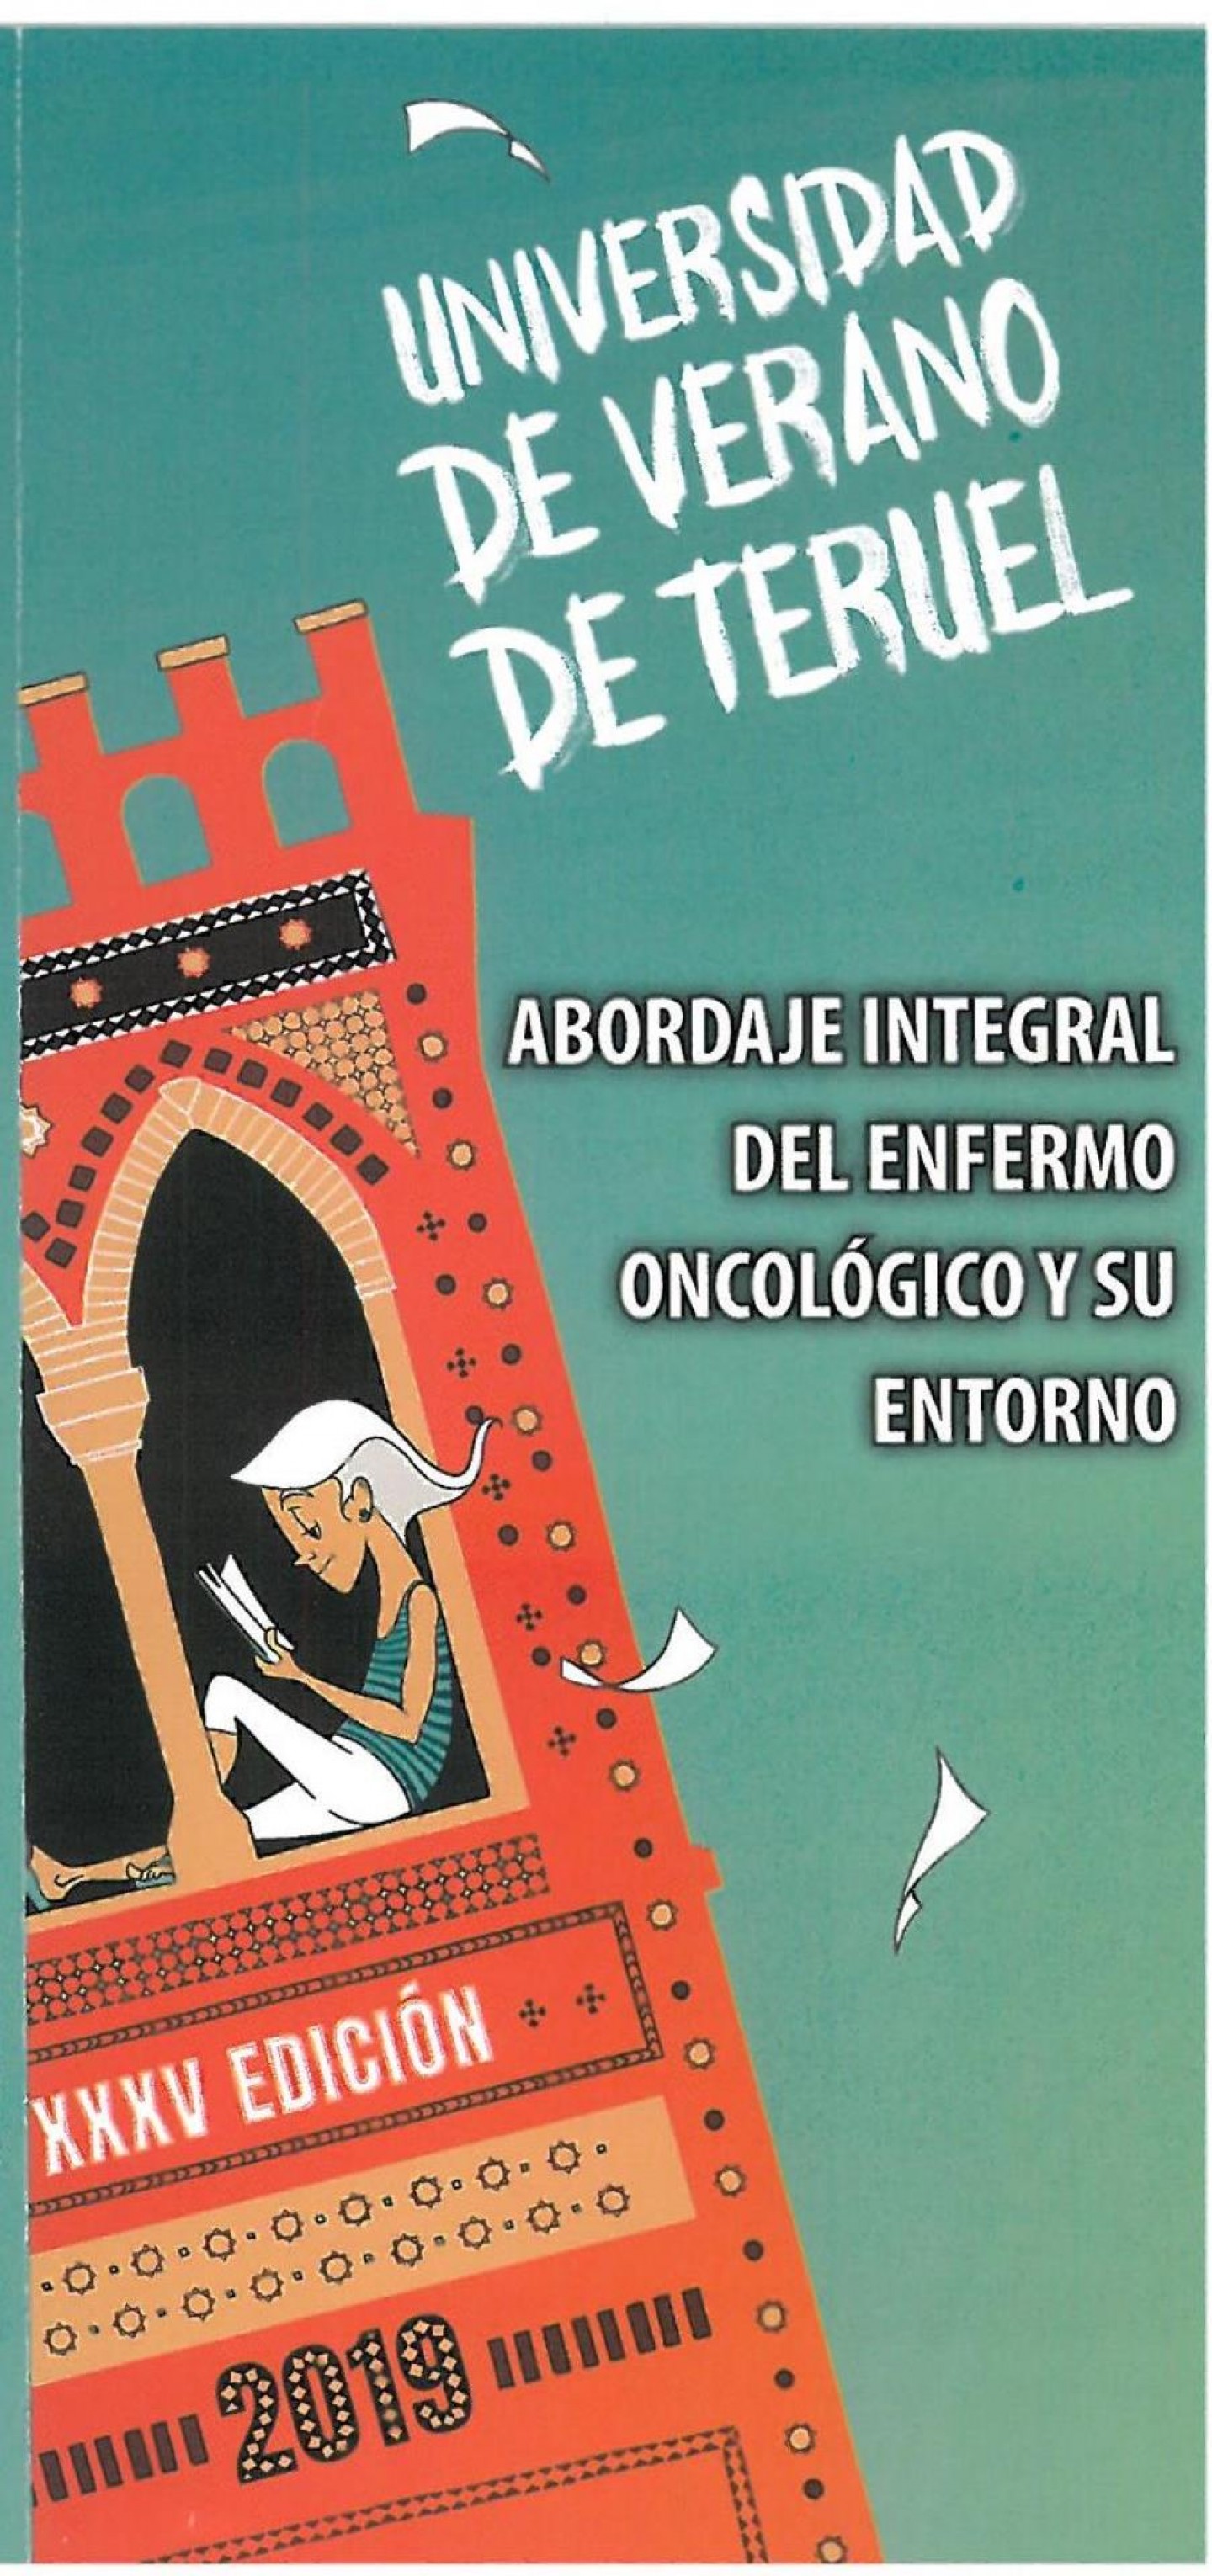 La Universidad de Teruel acoge el curso Abordaje Integral del Enfermo Oncológico y su Entorno